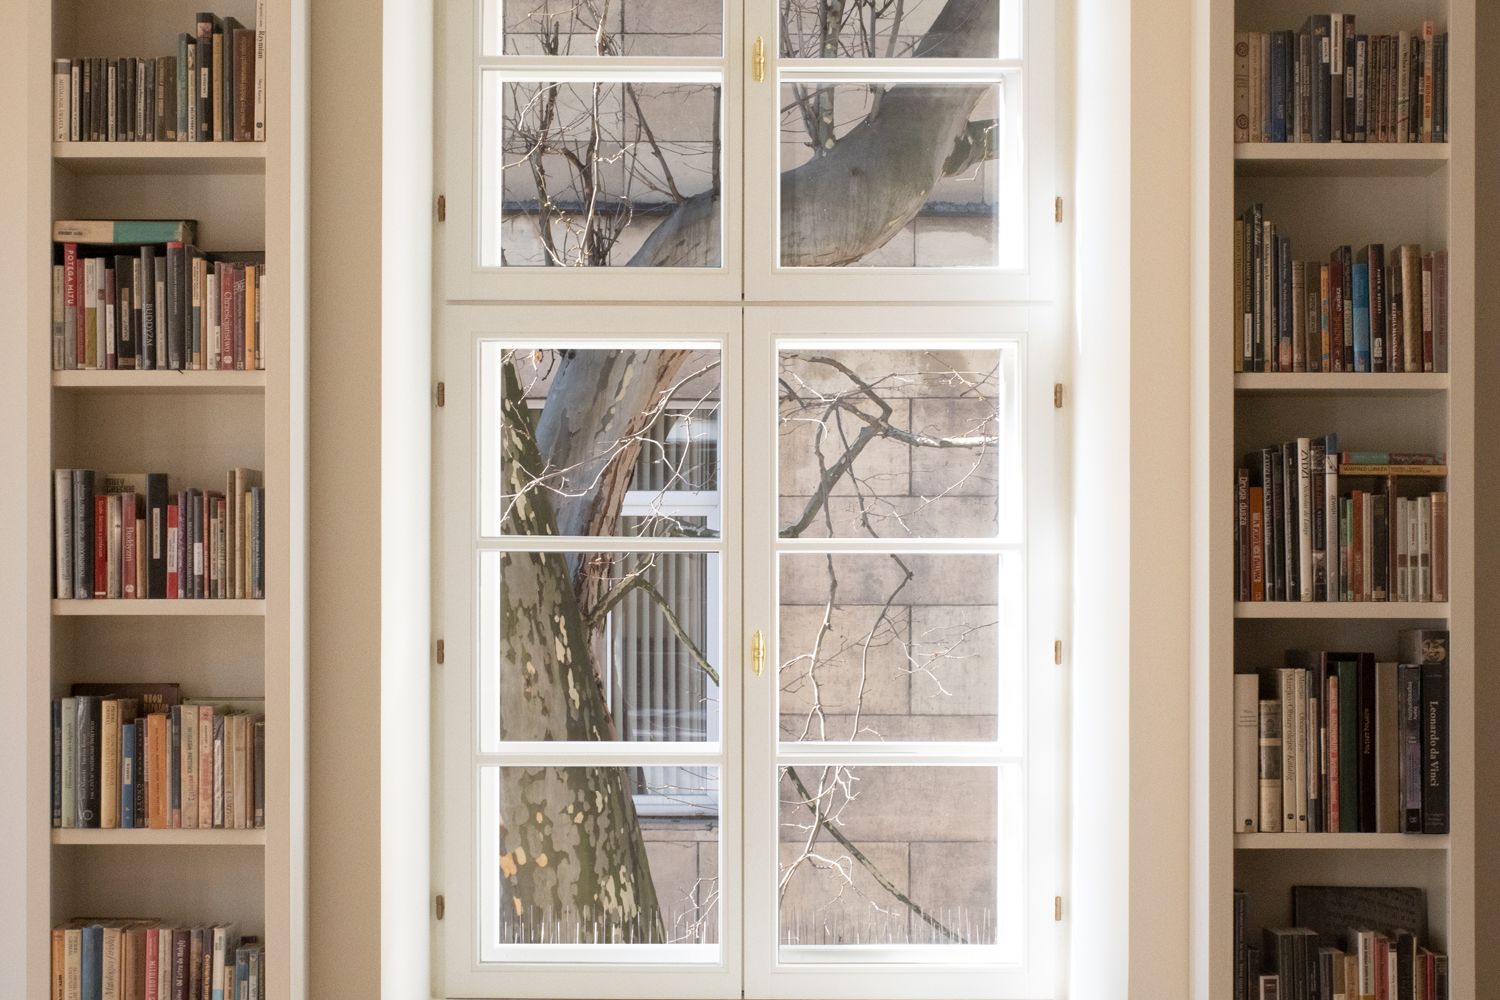 Na fotografii wnętrze Filii Sztuki Biblioteki Raczyńskich. Widać białe regały książkowe i duże okno, za którym widać fragment pnia i gałęzi platana.